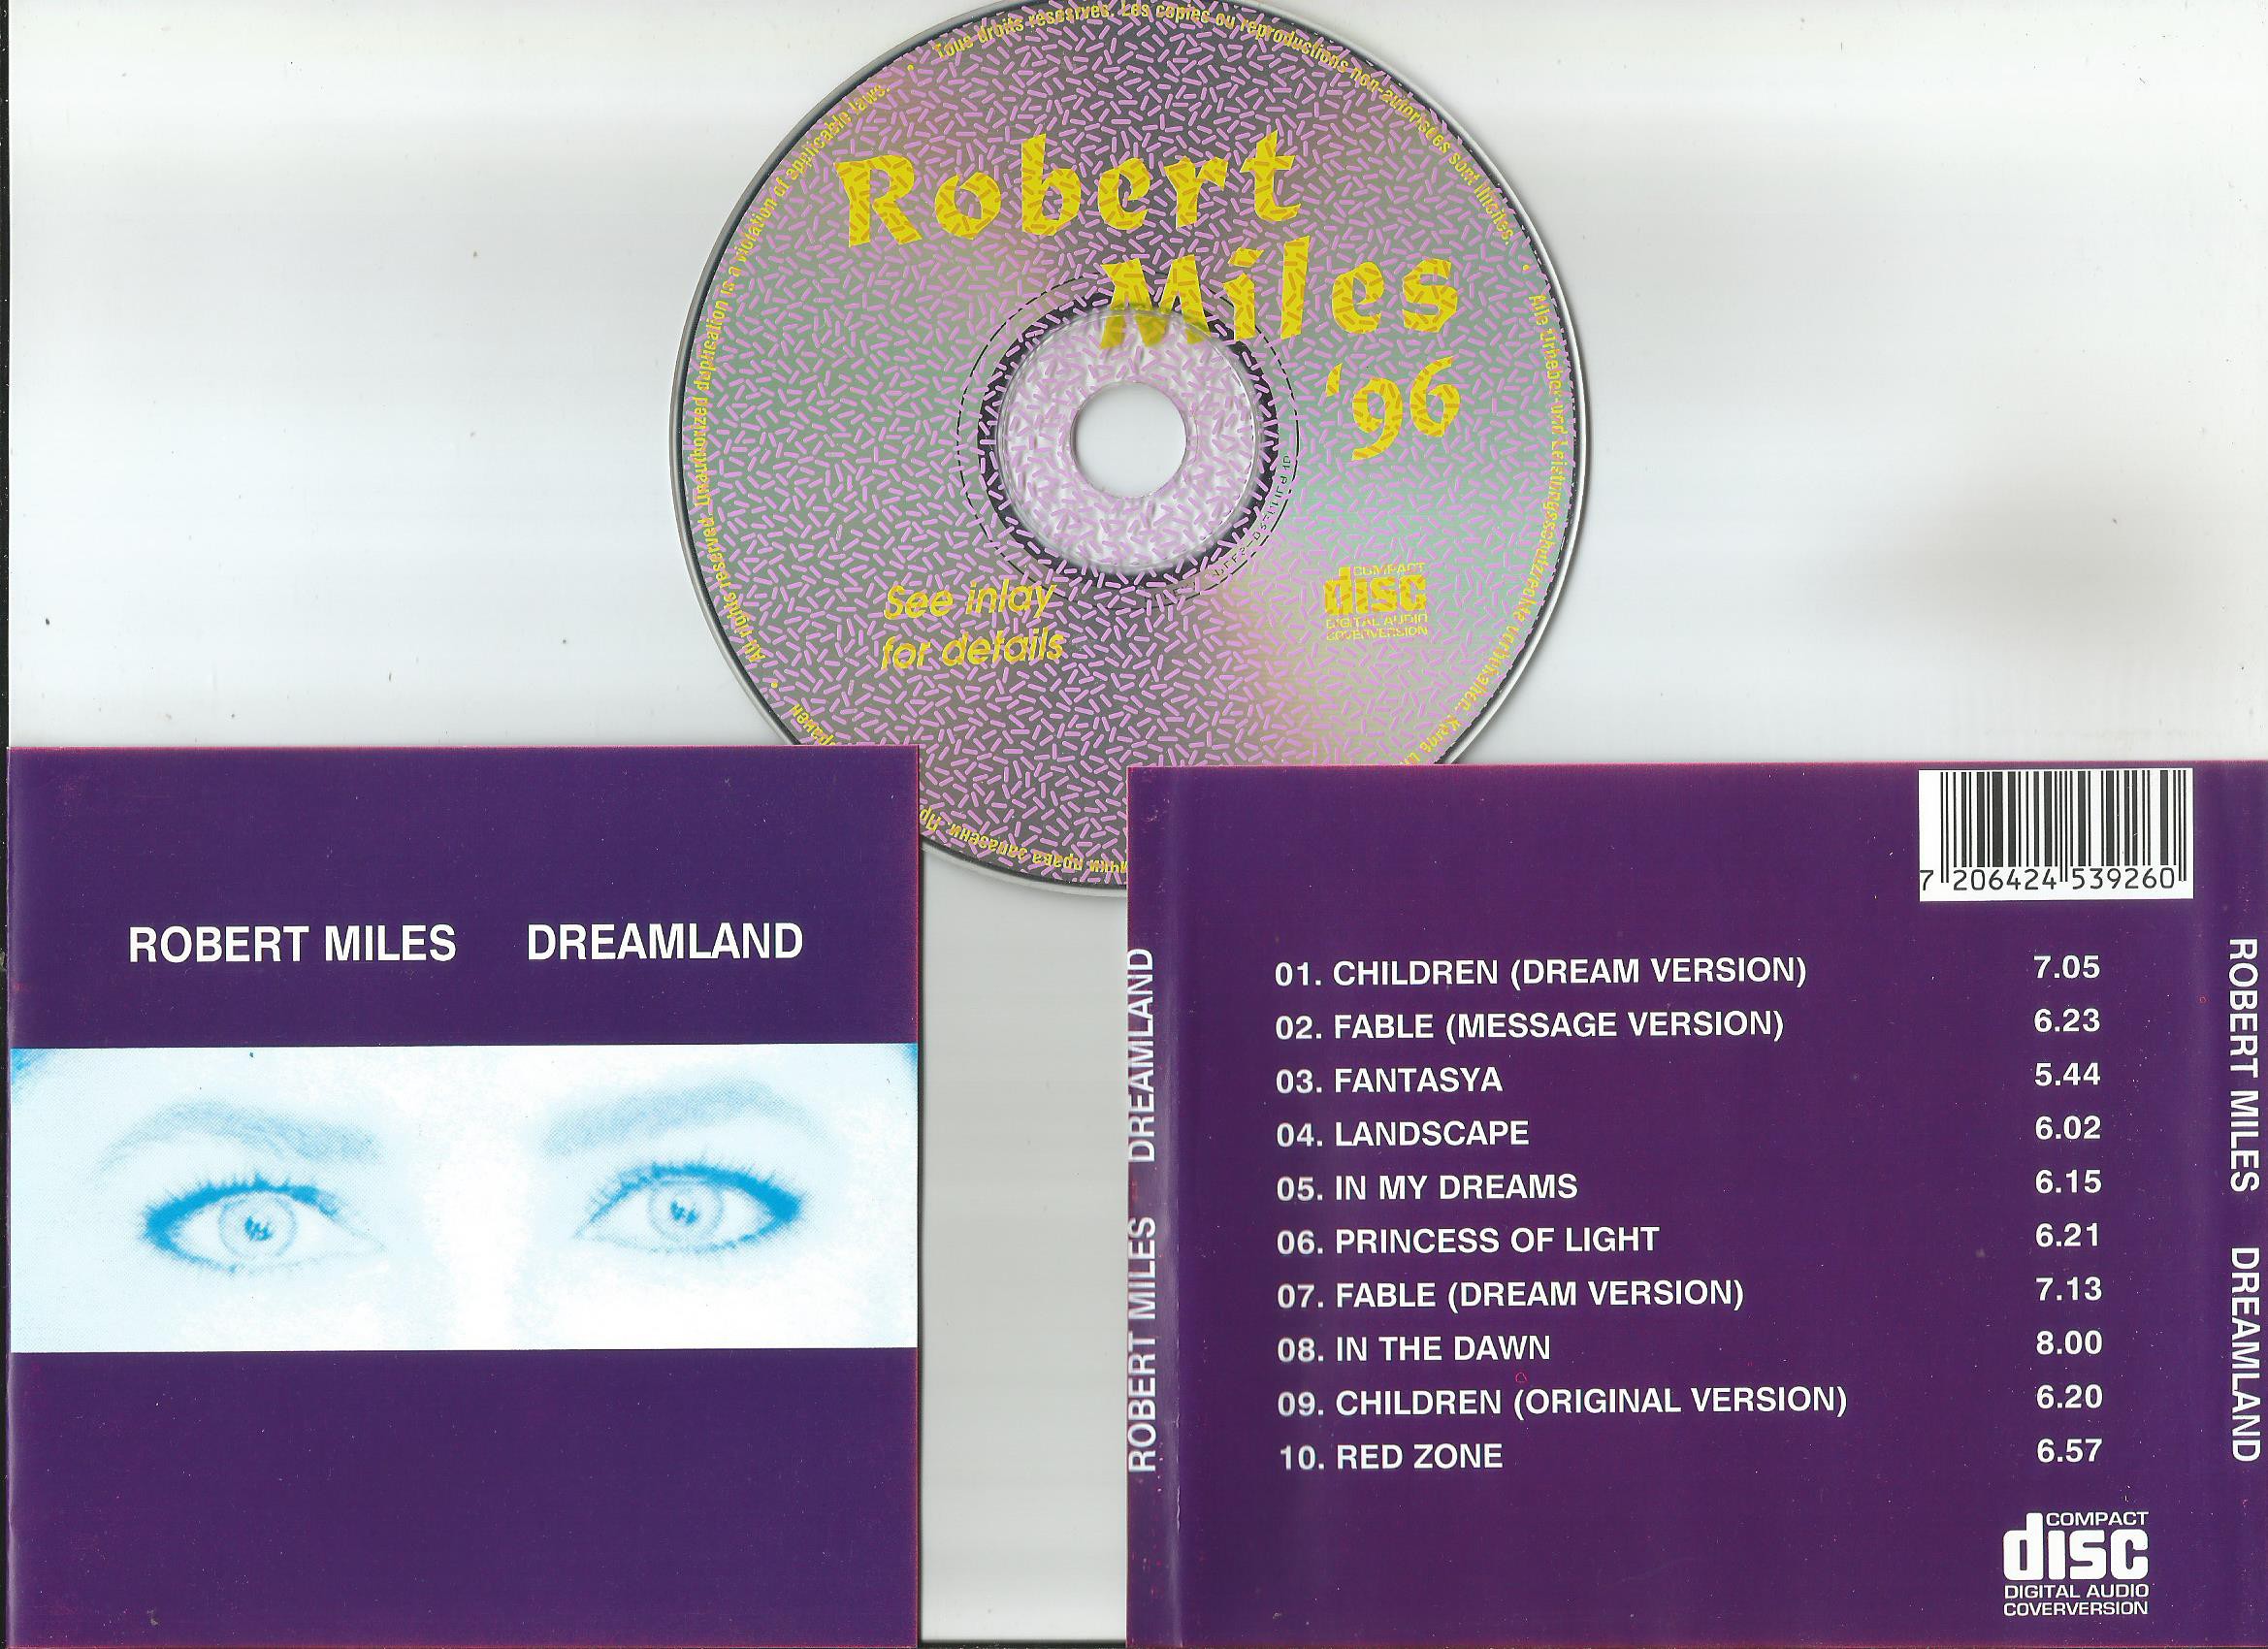 Robert miles dreamland. Robert Miles Dreamland 1996 обложка. Robert Miles - Dreamland (1996) компакт диск. Robert Miles Dreamland обложка CD. Robert Miles Dreamland album.